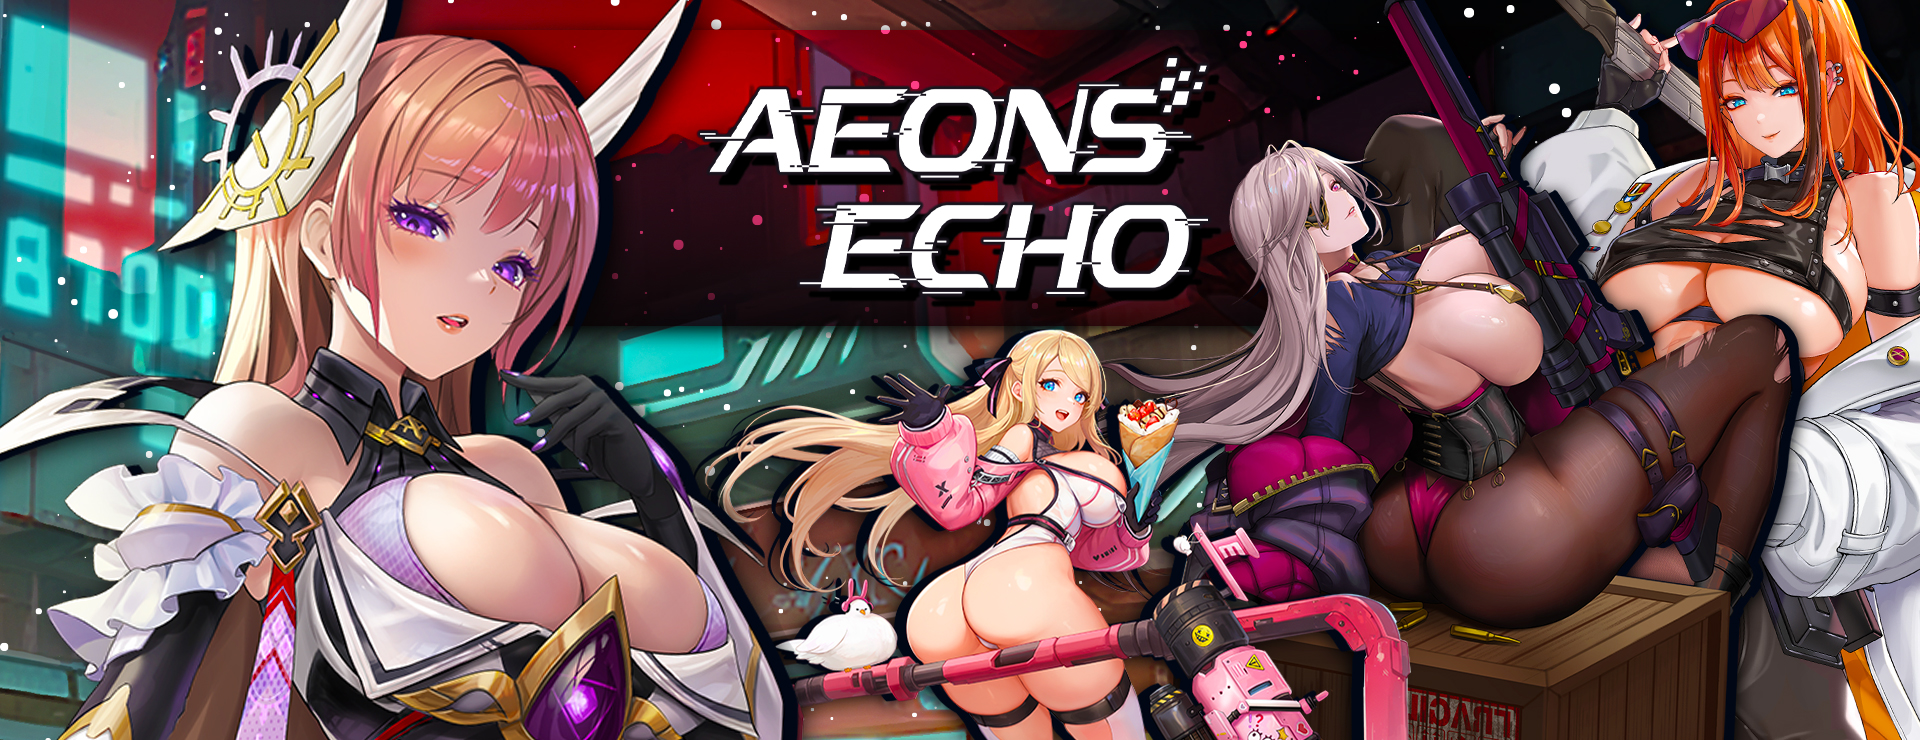 Aeons Echo - Casual Juego